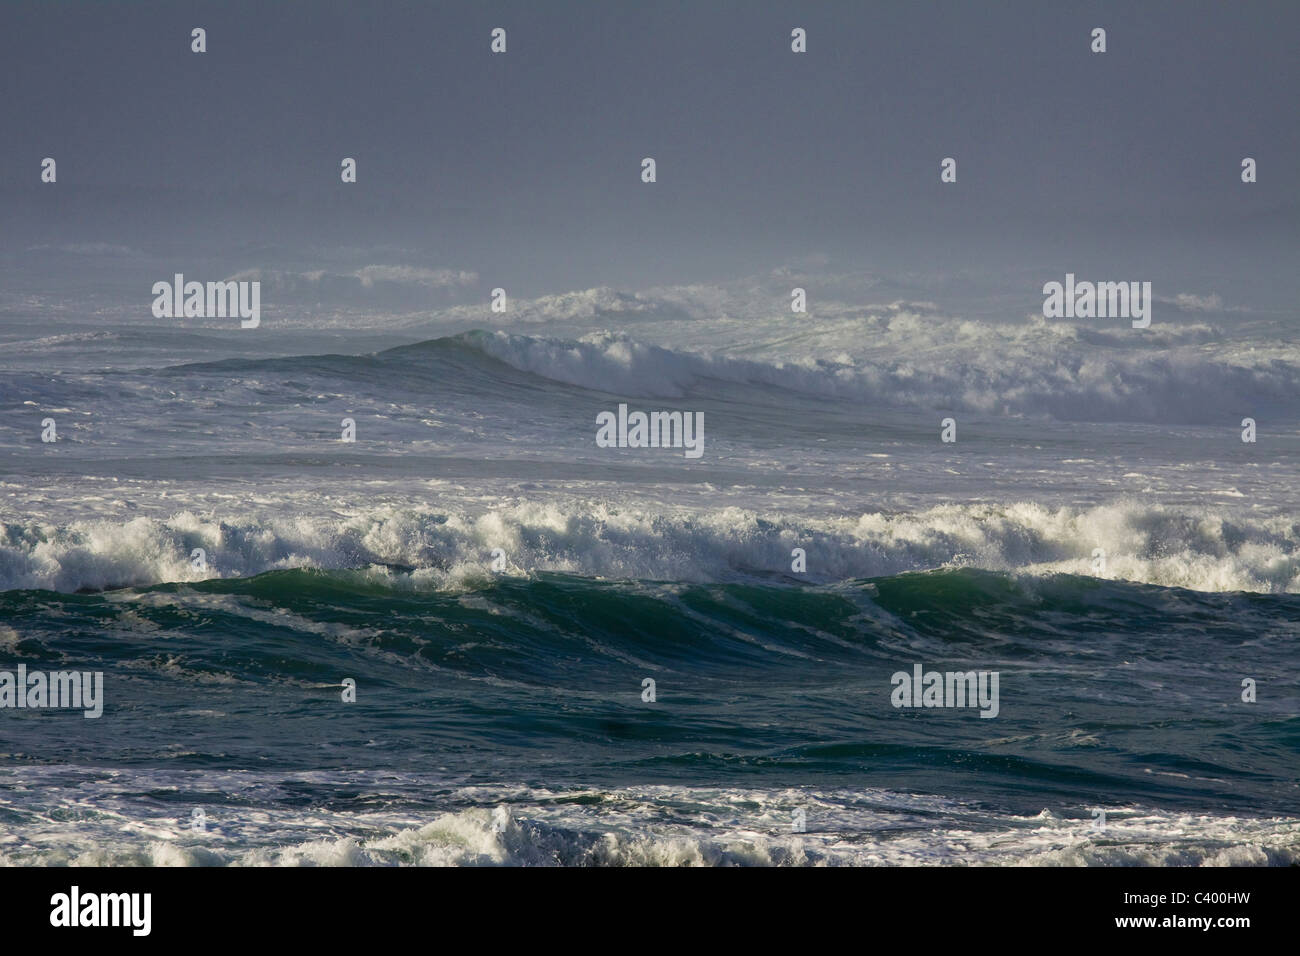 Les vagues de l'océan tumultueux, l'hiver dans le parc national Pacific Rim, l'île de Vancouver, Colombie-Britannique Banque D'Images